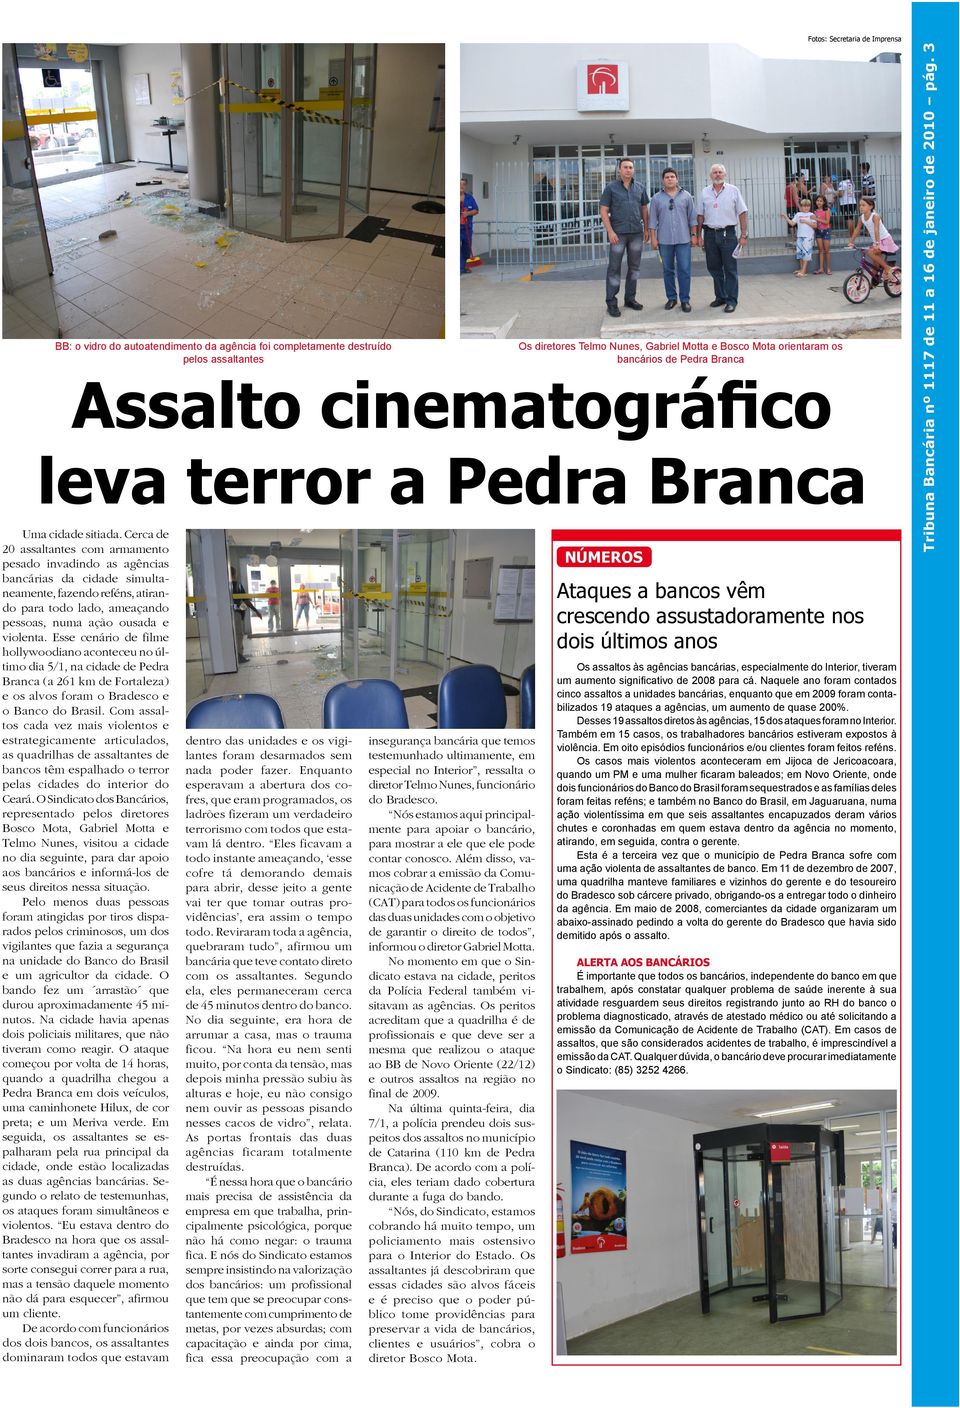 Esse cenário de filme hollywoodiano aconteceu no último dia 5/1, na cidade de Pedra Branca (a 261 km de Fortaleza) e os alvos foram o Bradesco e o Banco do Brasil.